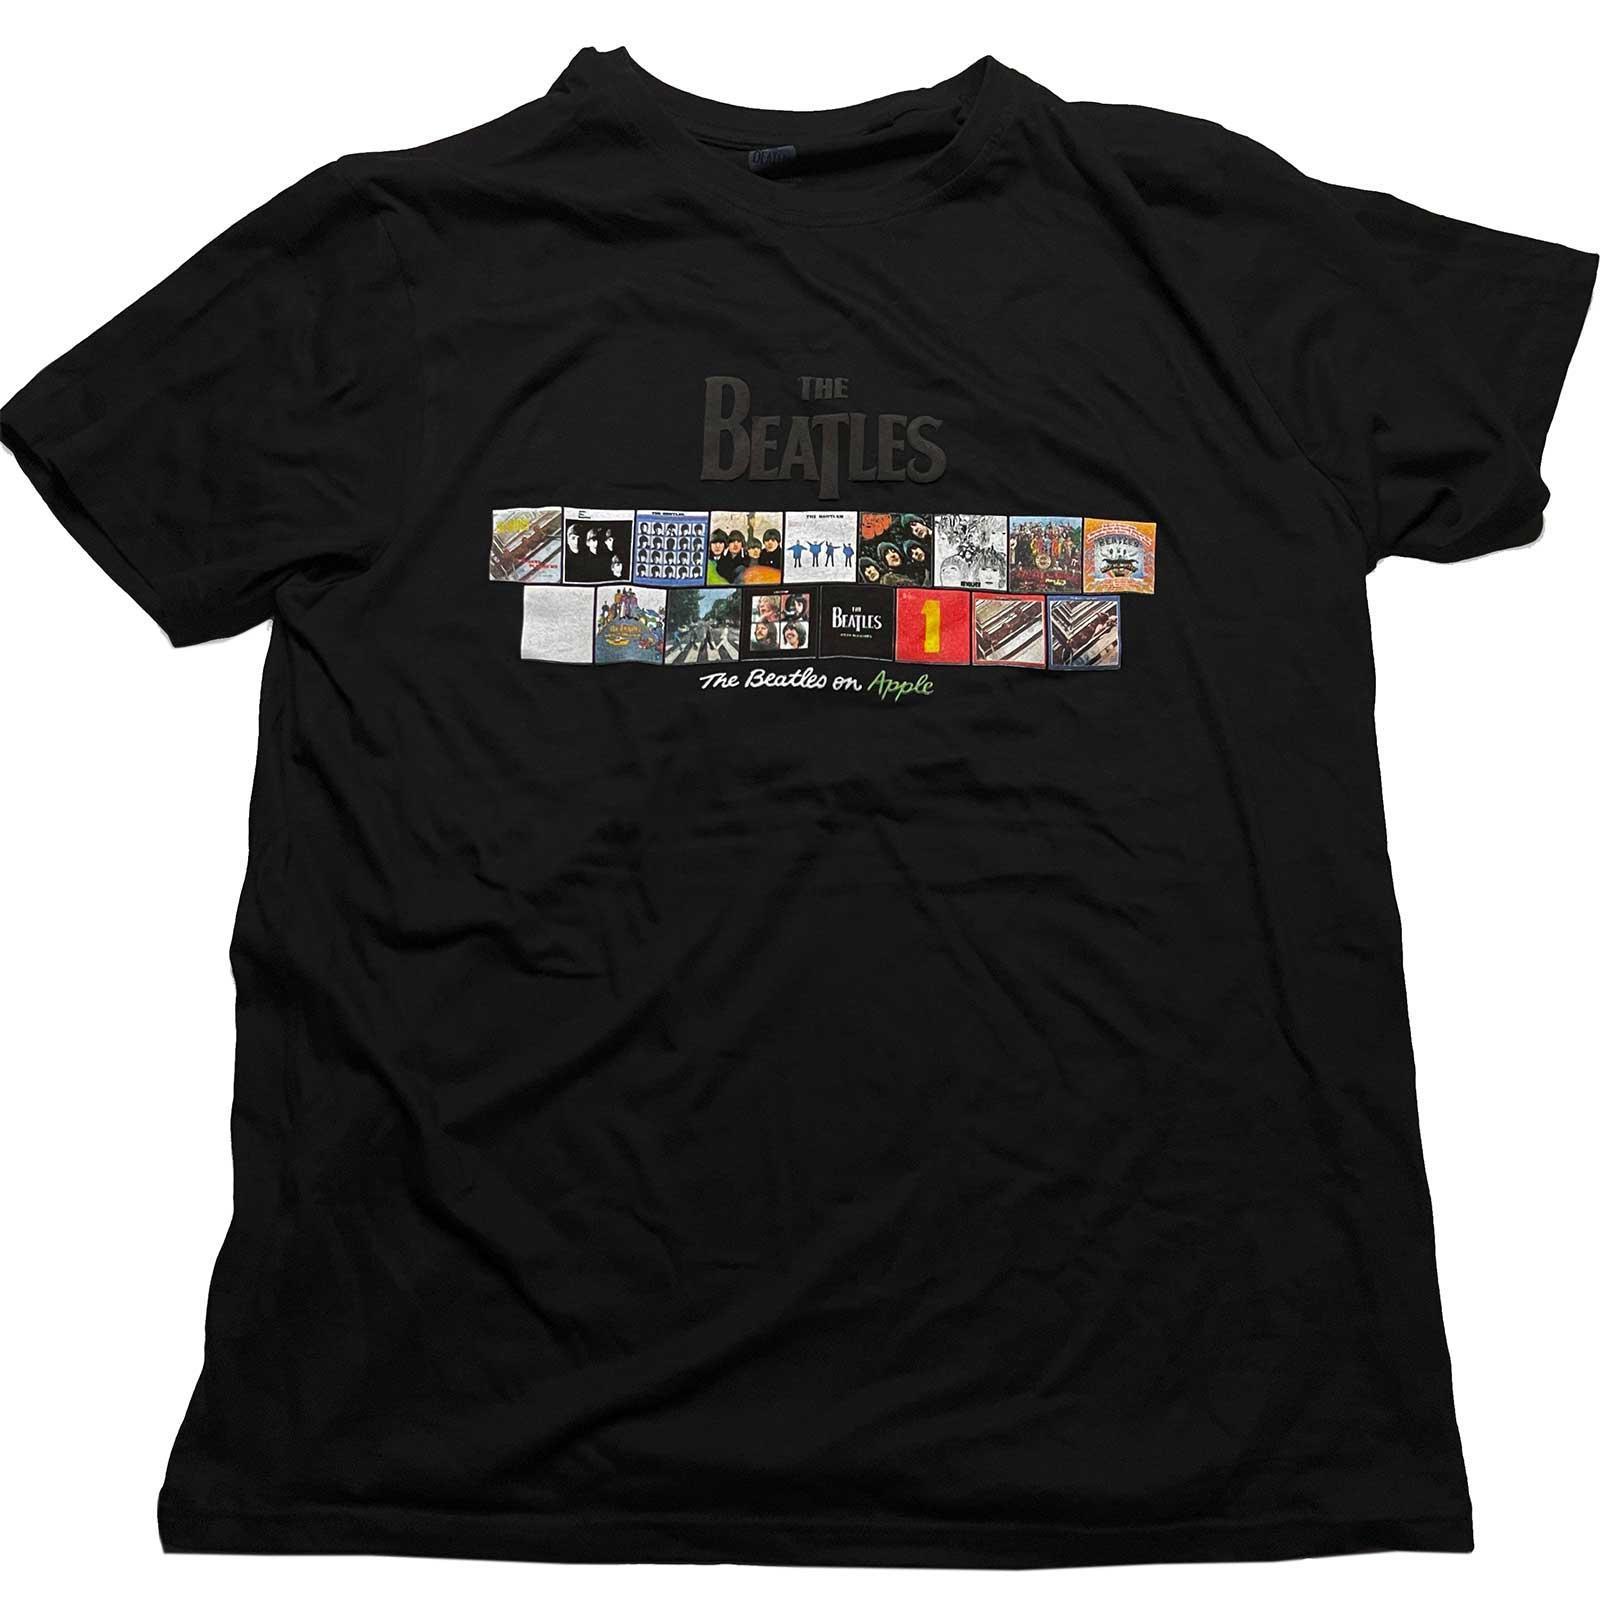 The Beatles Unisex Adult Albums on Apple Cotton T-Shirt (Black) (L)